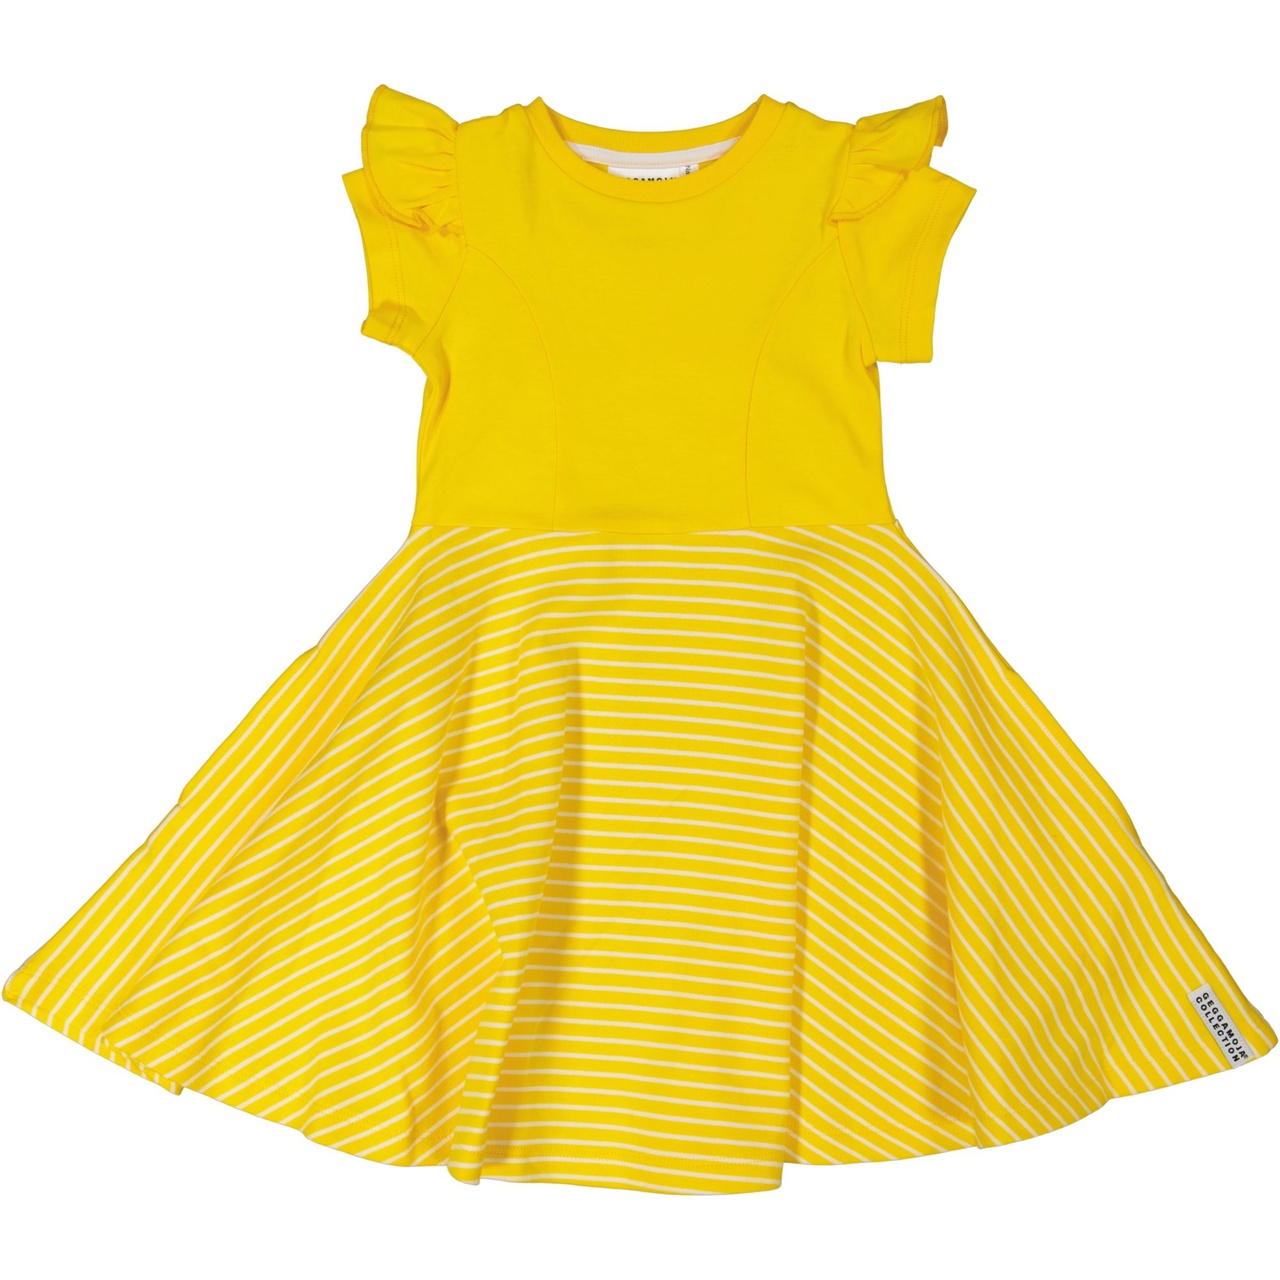 Flared dress Yellow/white  50/56